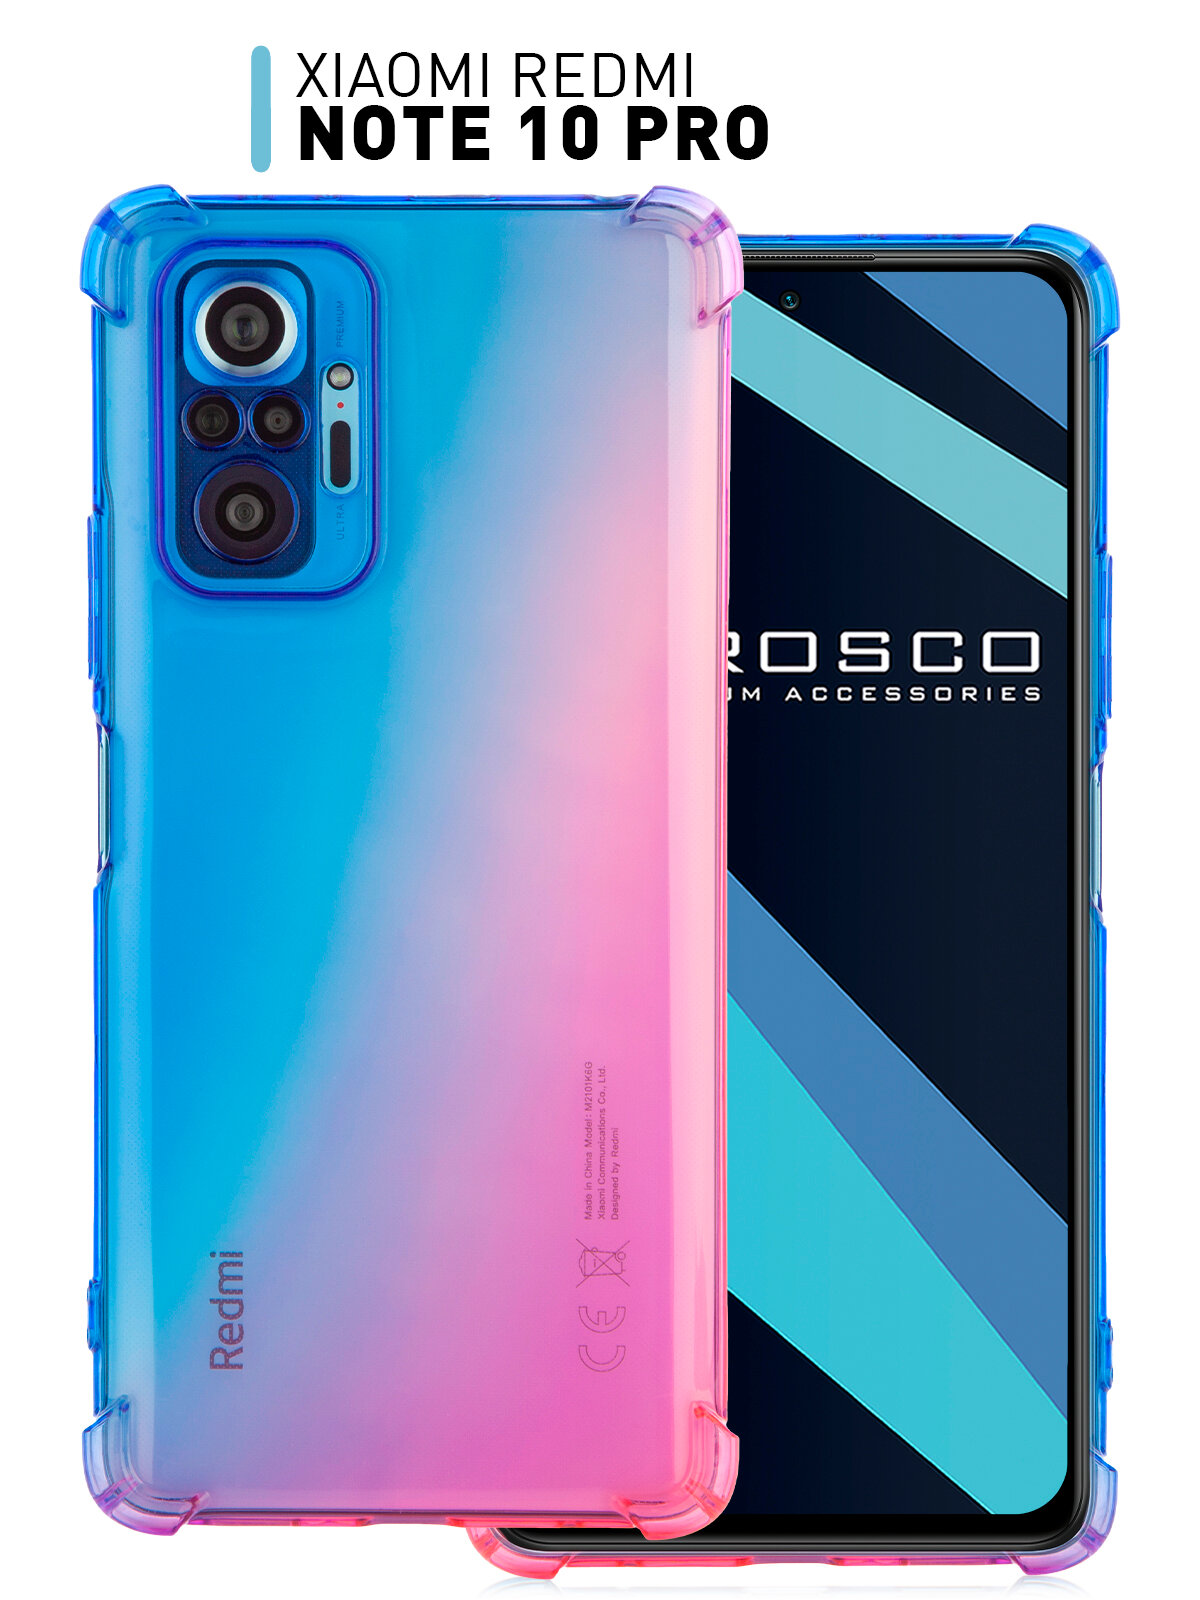 Противоударный силиконовый чехол ROSCO для Xiaomi Redmi Note 10 Pro (Ксиаоми, Сяоми Редми Ноут 10 Про) усиленный защита камер, прозрачный сине-розовый